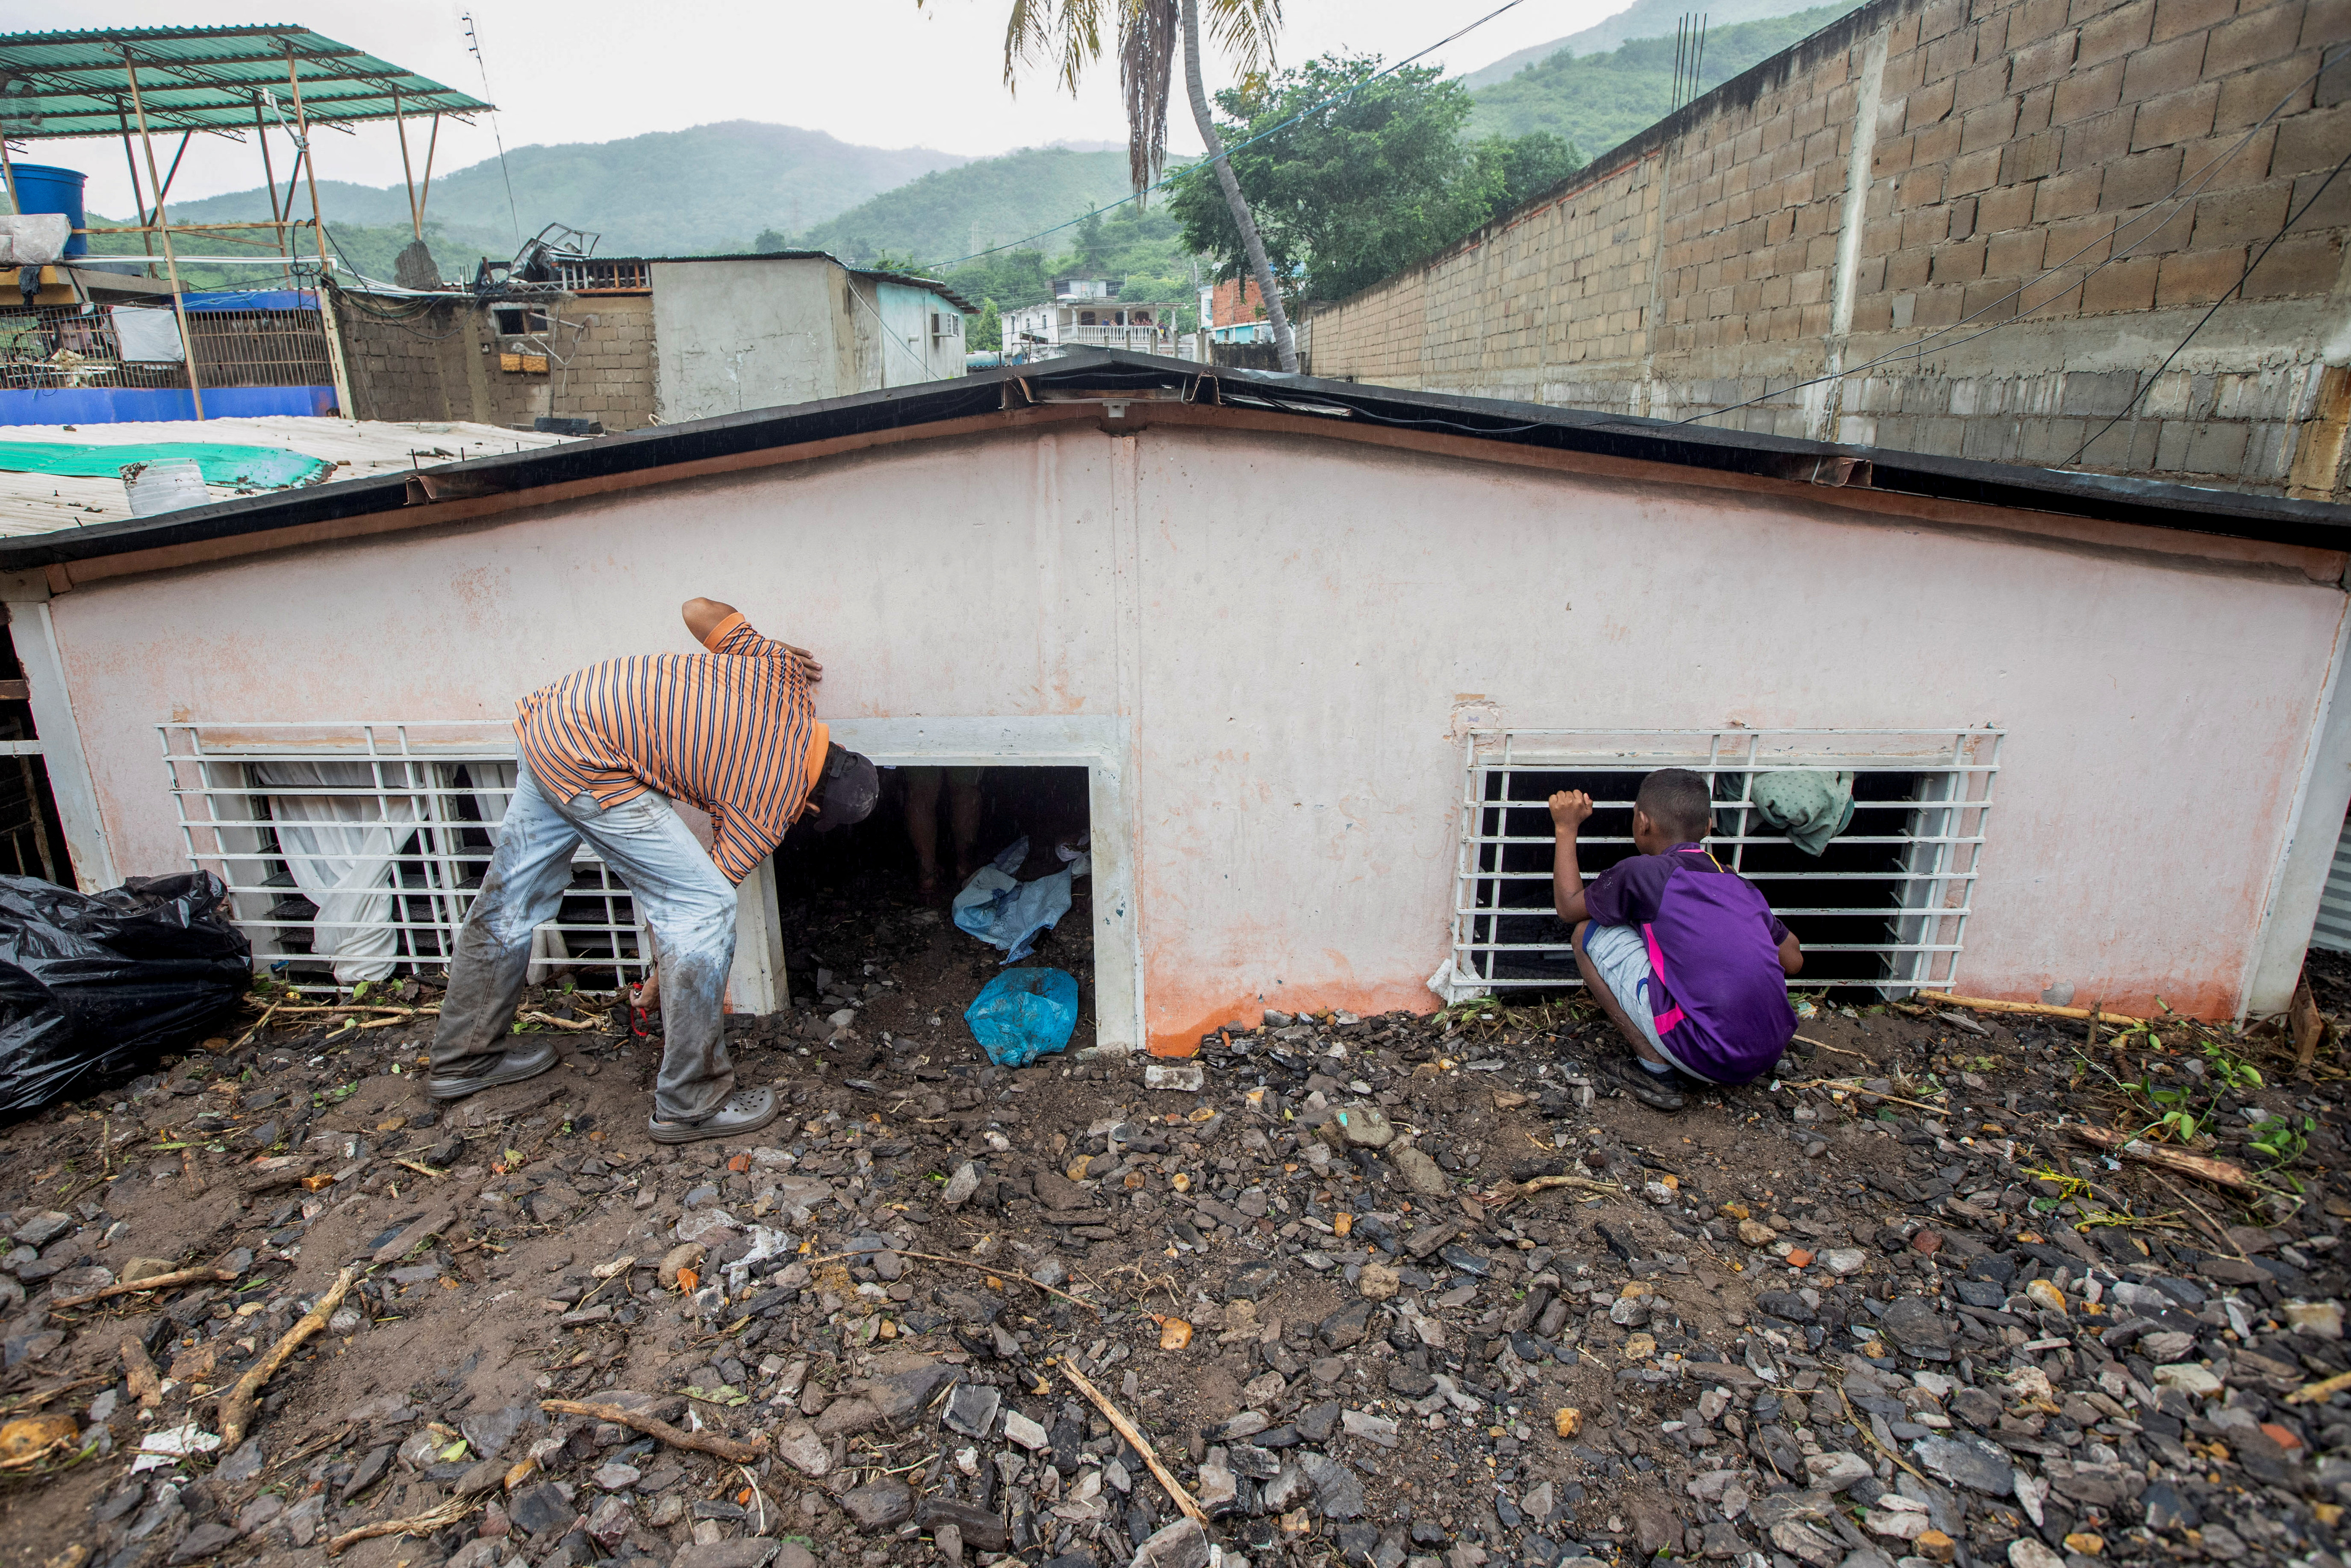 Los residentes miran dentro de una casa dañada después de las inundaciones causadas por las fuertes lluvias, en Puerto la Cruz